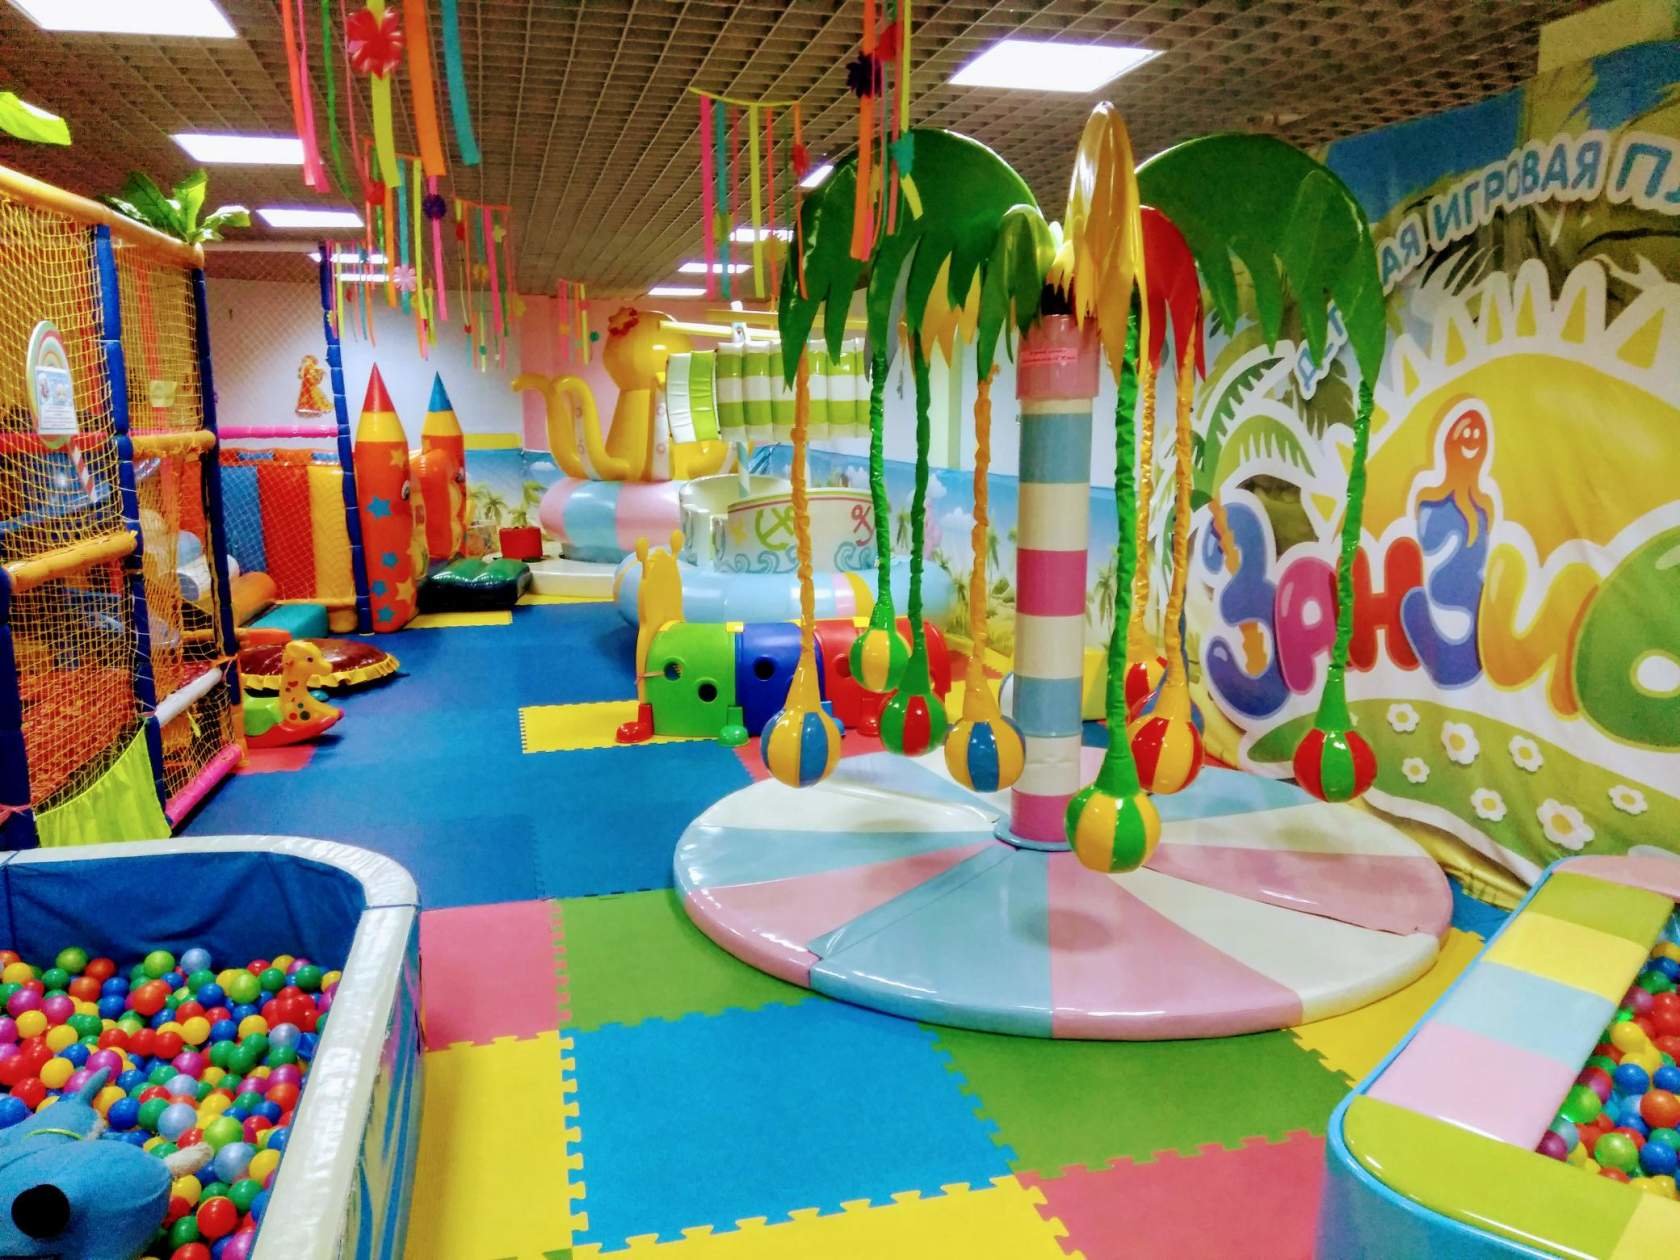 Зал развлечений. Развлекательный центр "детская игровой центр сказка" Динская. Игровая комната для детей. Детские развлекательные комнаты. Детские щавлекательные комната.